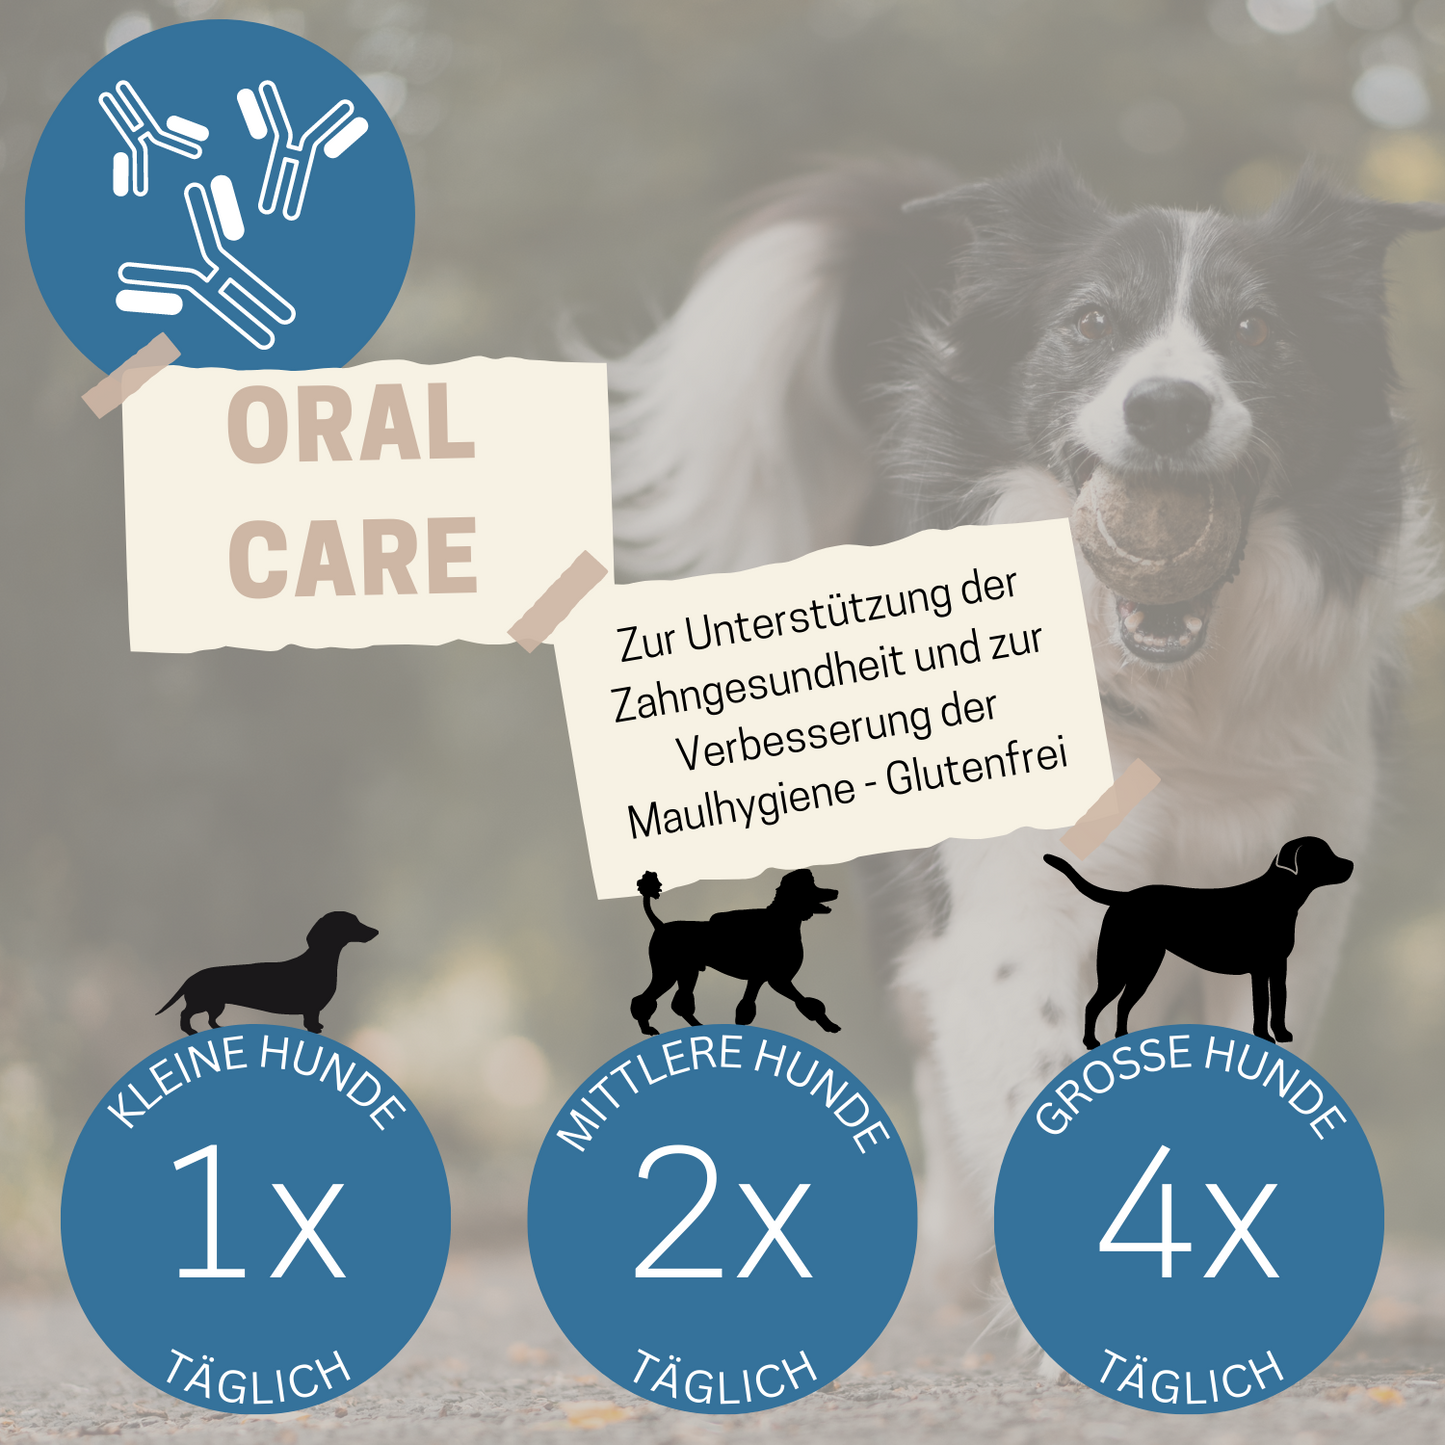 Hundekausnack I Zahnpflege für Hunde I WEDEdog ORAL CARE I Zahngesundheit Hund I Zahnhygiene Hund I 80g